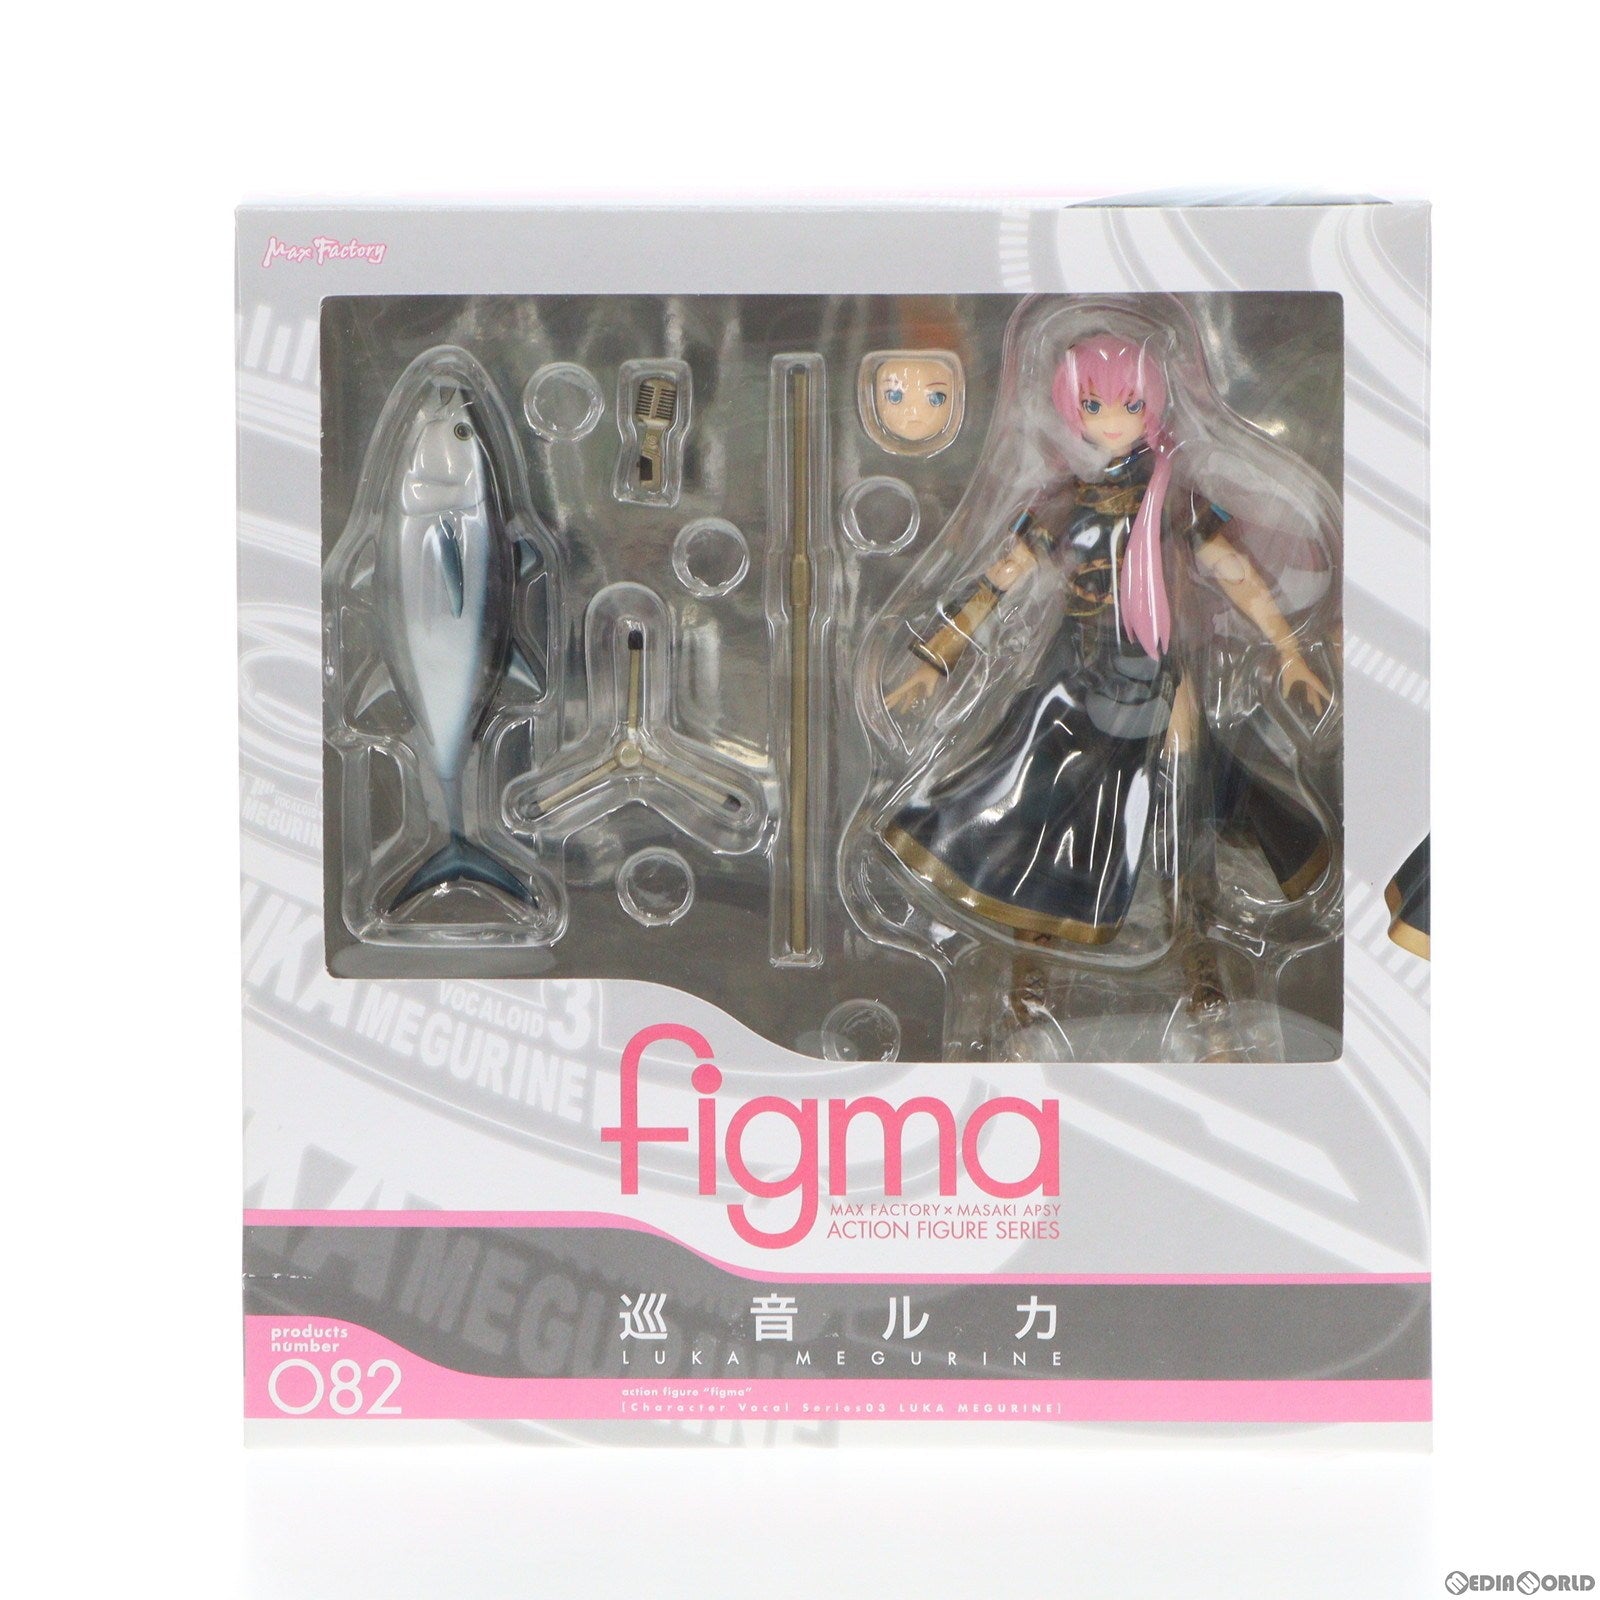 【中古即納】[FIG]figma(フィグマ) 082 巡音ルカ(めぐりねるか) キャラクター・ボーカル・シリーズ03 巡音ルカ 完成品 可動フィギュア マックスファクトリー(20101130)